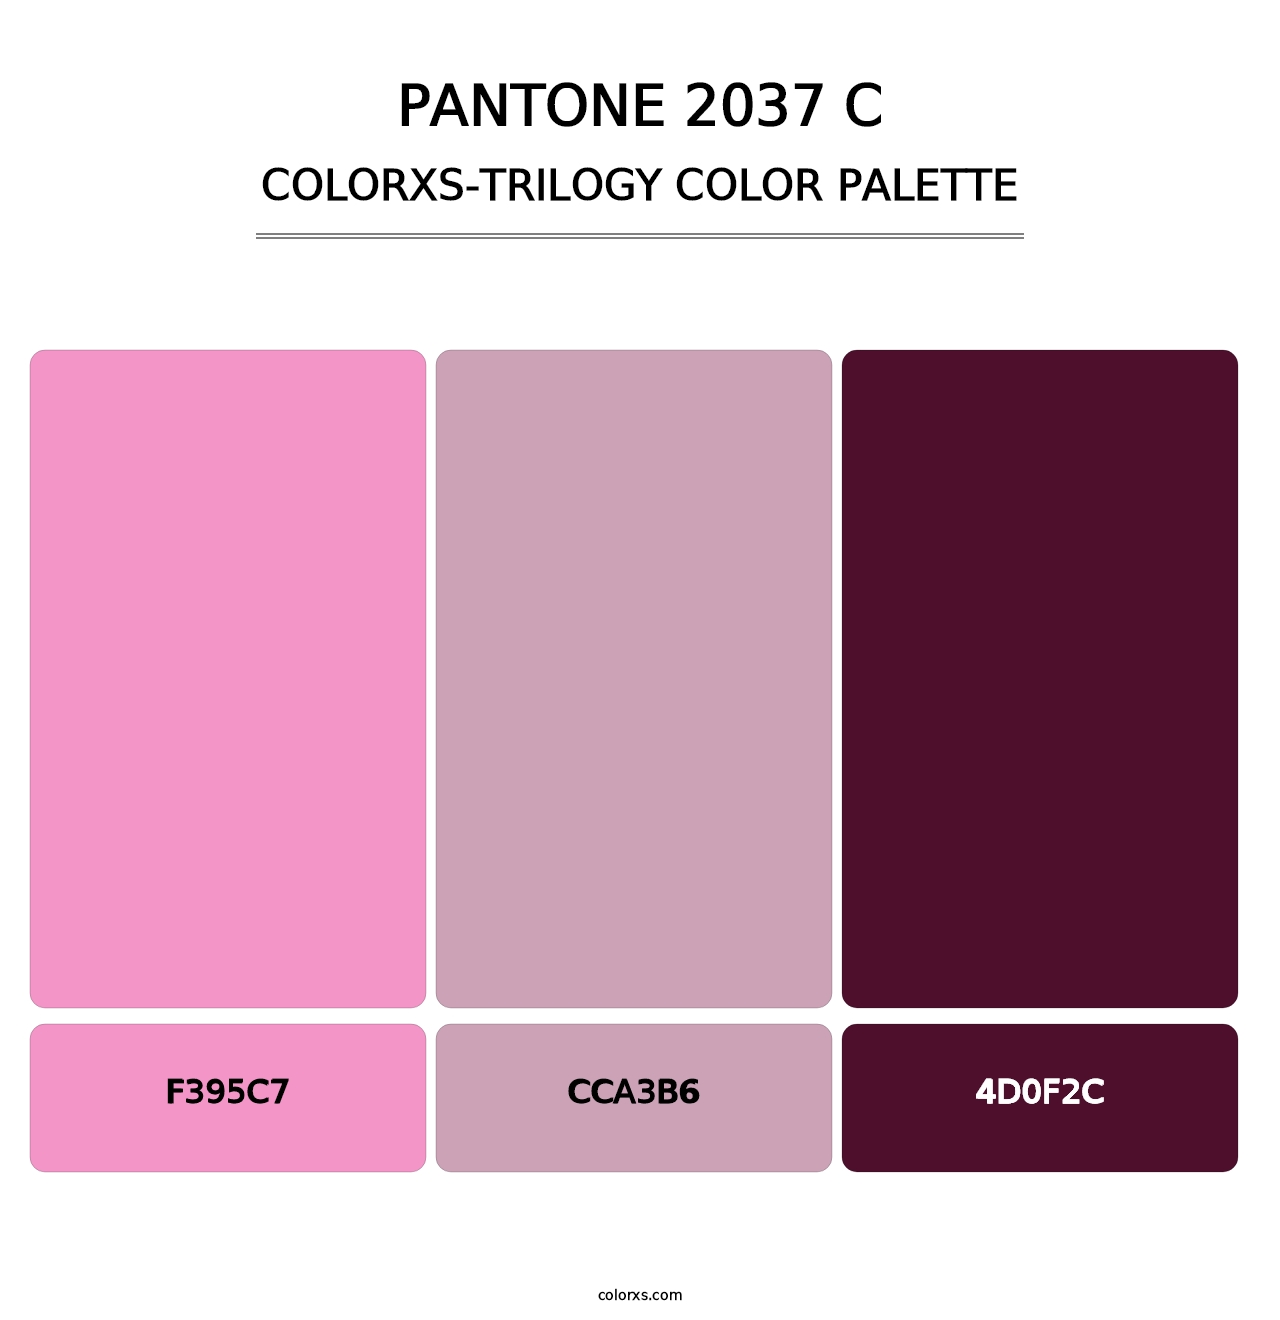 PANTONE 2037 C - Colorxs Trilogy Palette